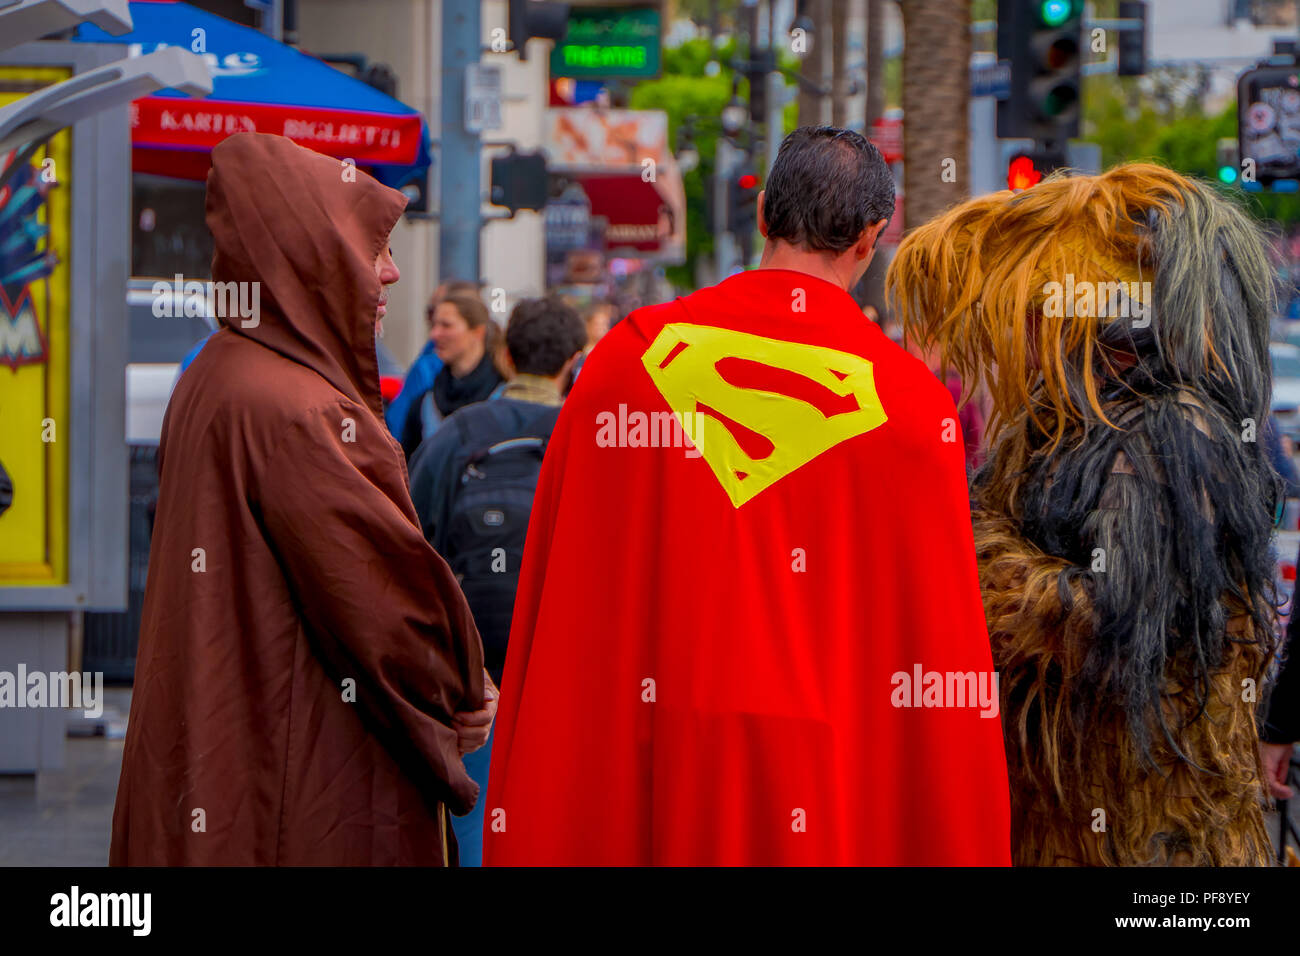 Los Angeles, California, USA, Junio 15, 2018: Vista exterior de personas no identificadas usando diferentes disfraces, Superman, Chewbacca y jedi en las calles de Los Angeles en Hollywood Foto de stock